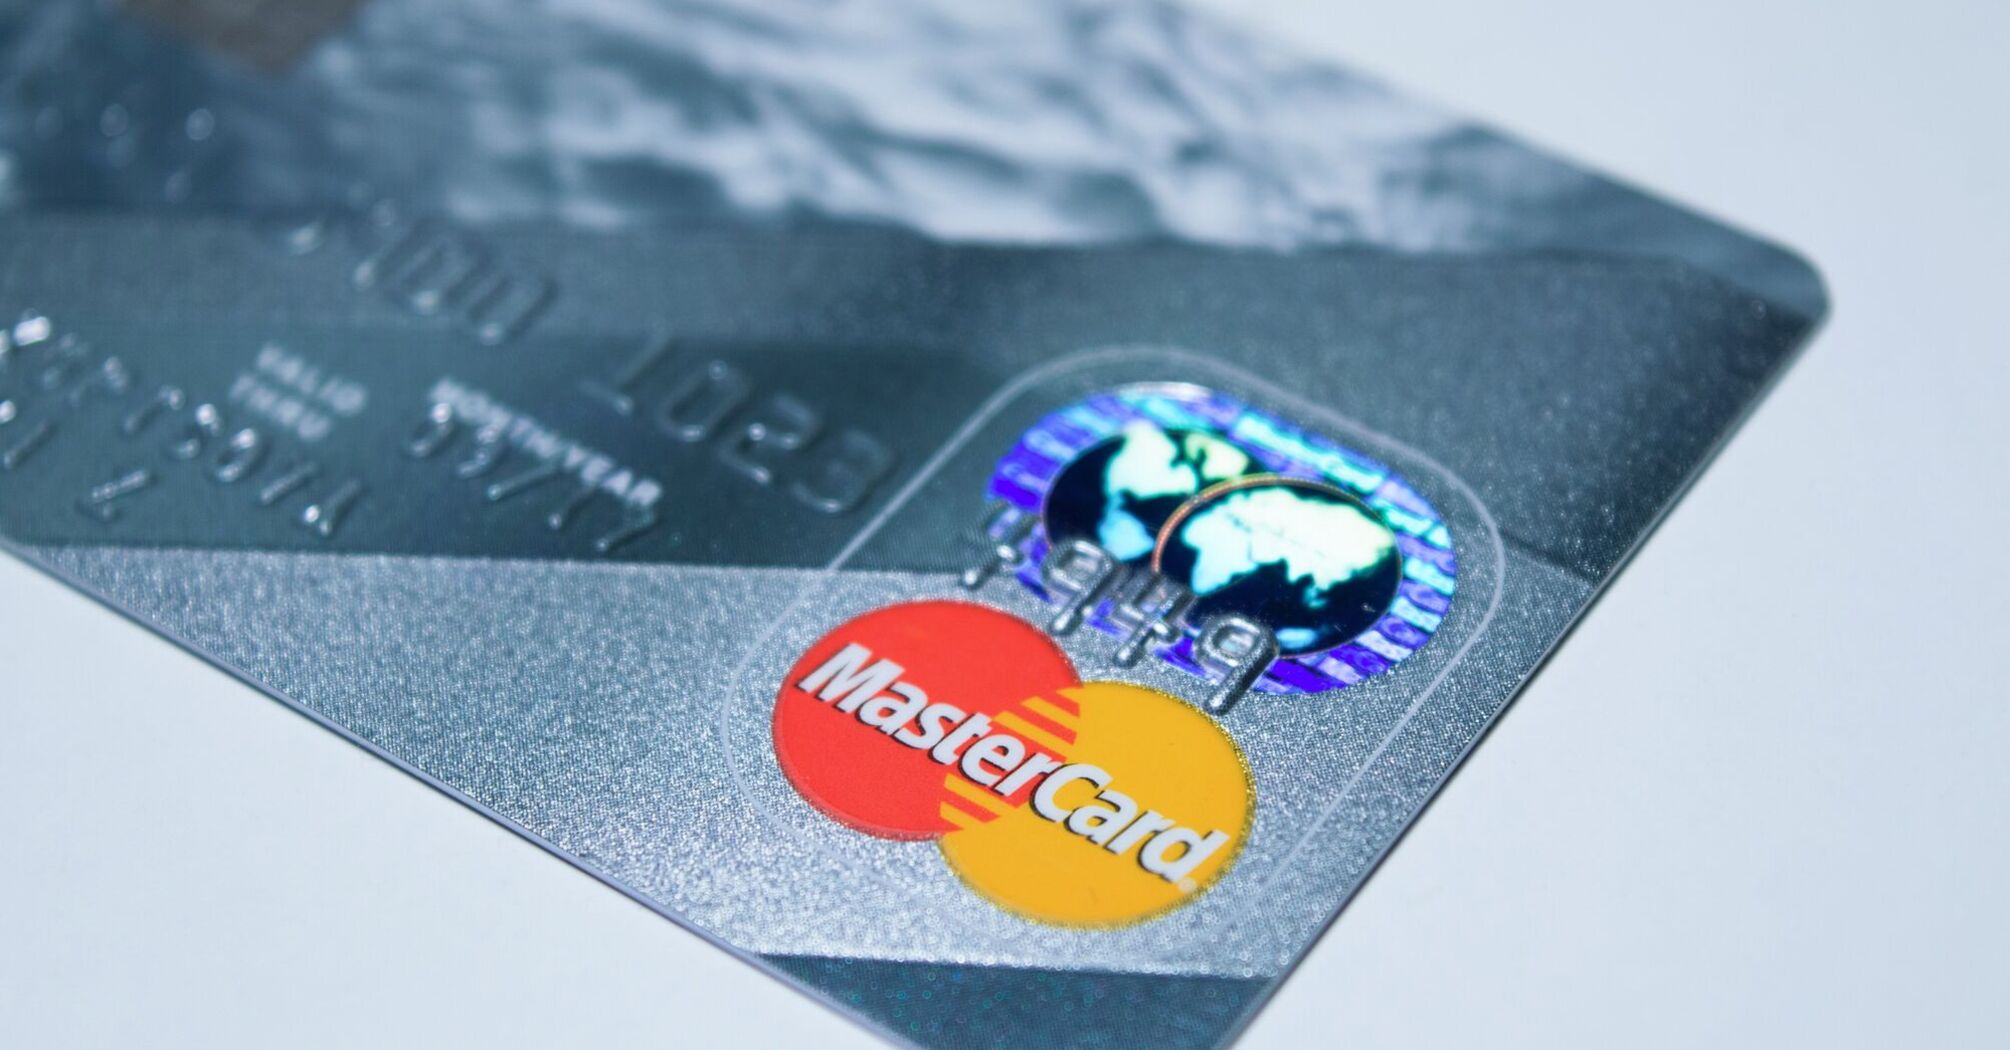 Mastercard credit card close-up